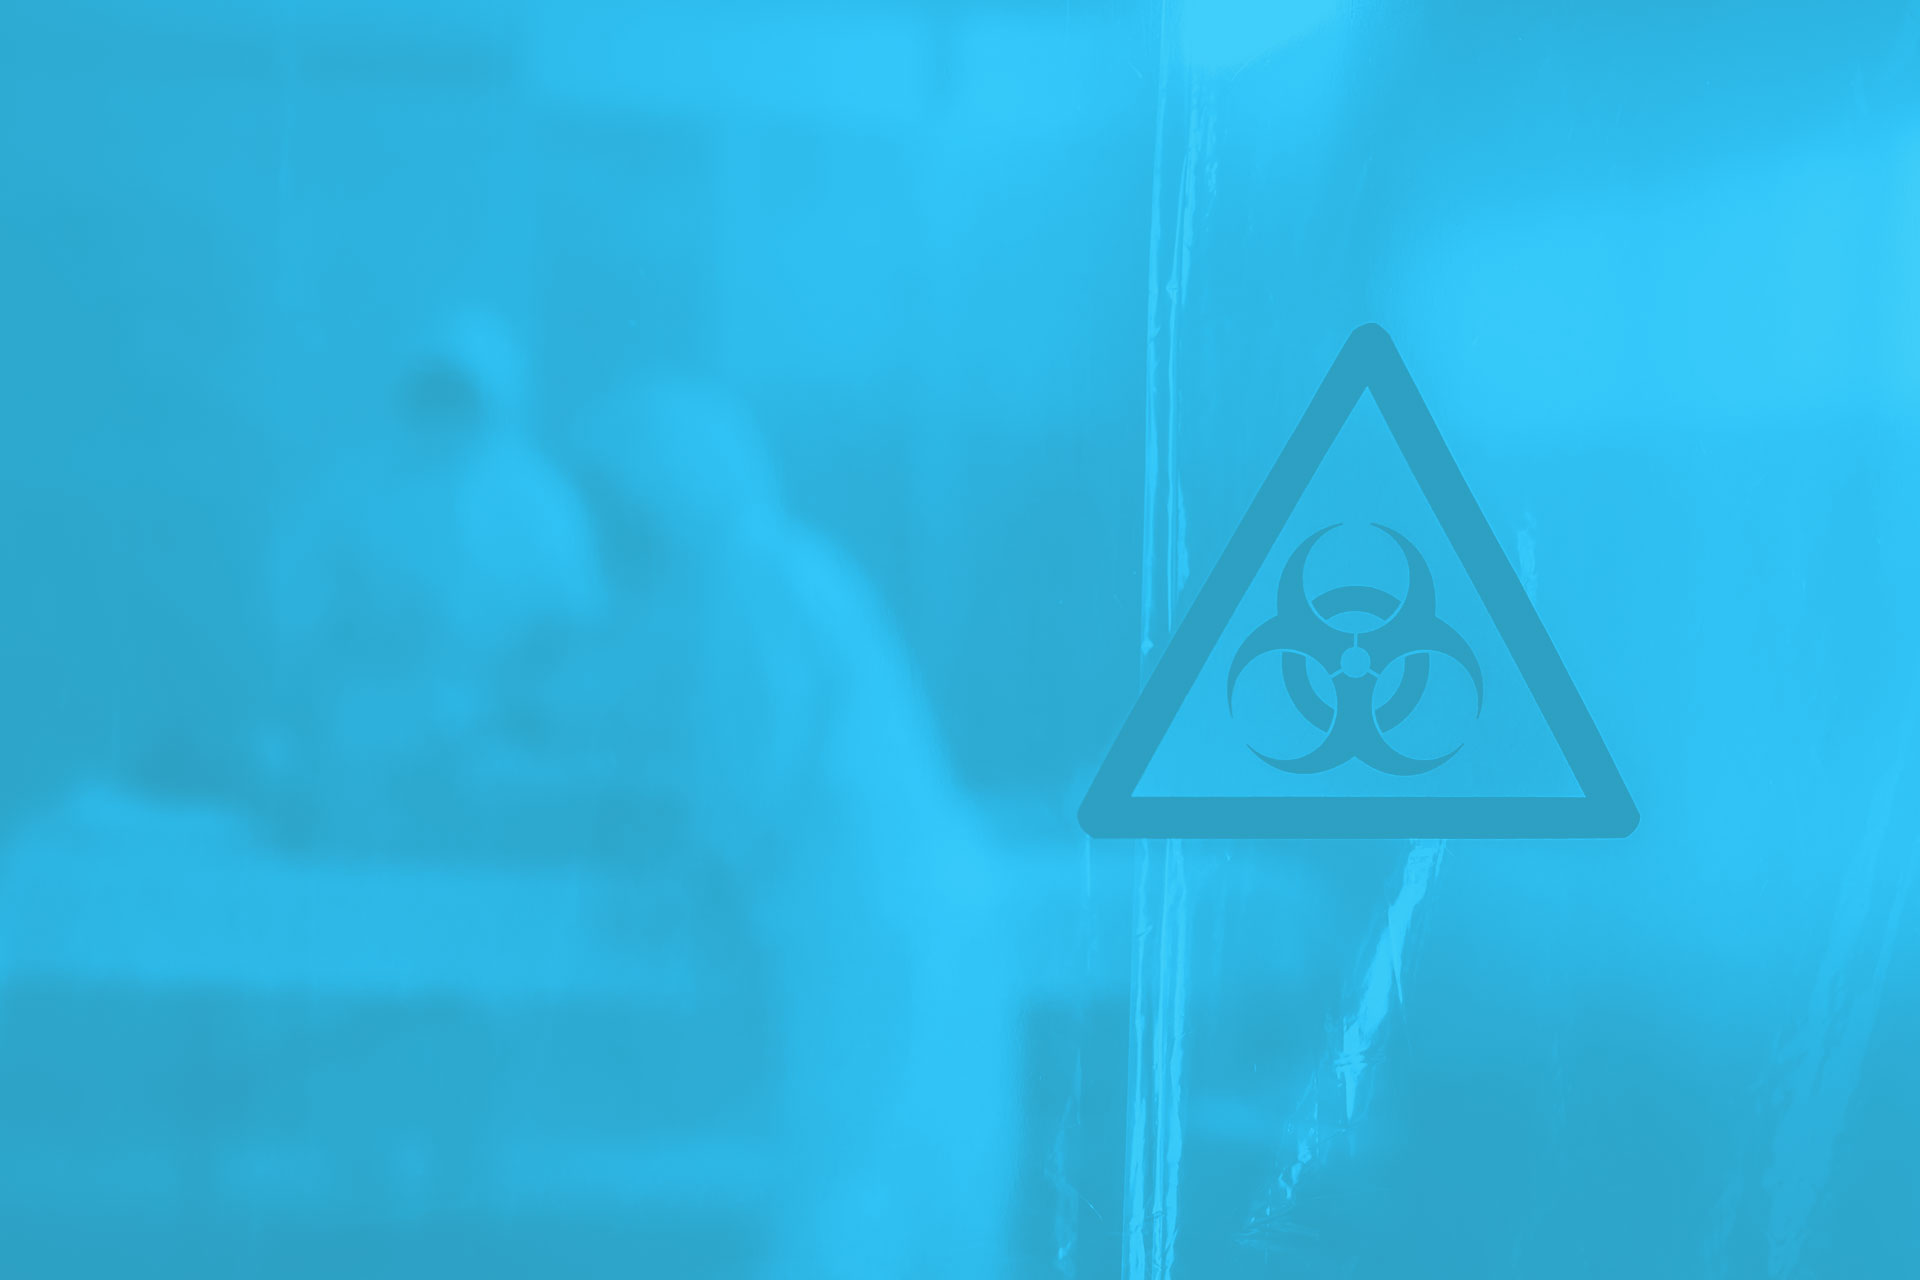 Bio-Hazard - Bacteria and Virus Awareness